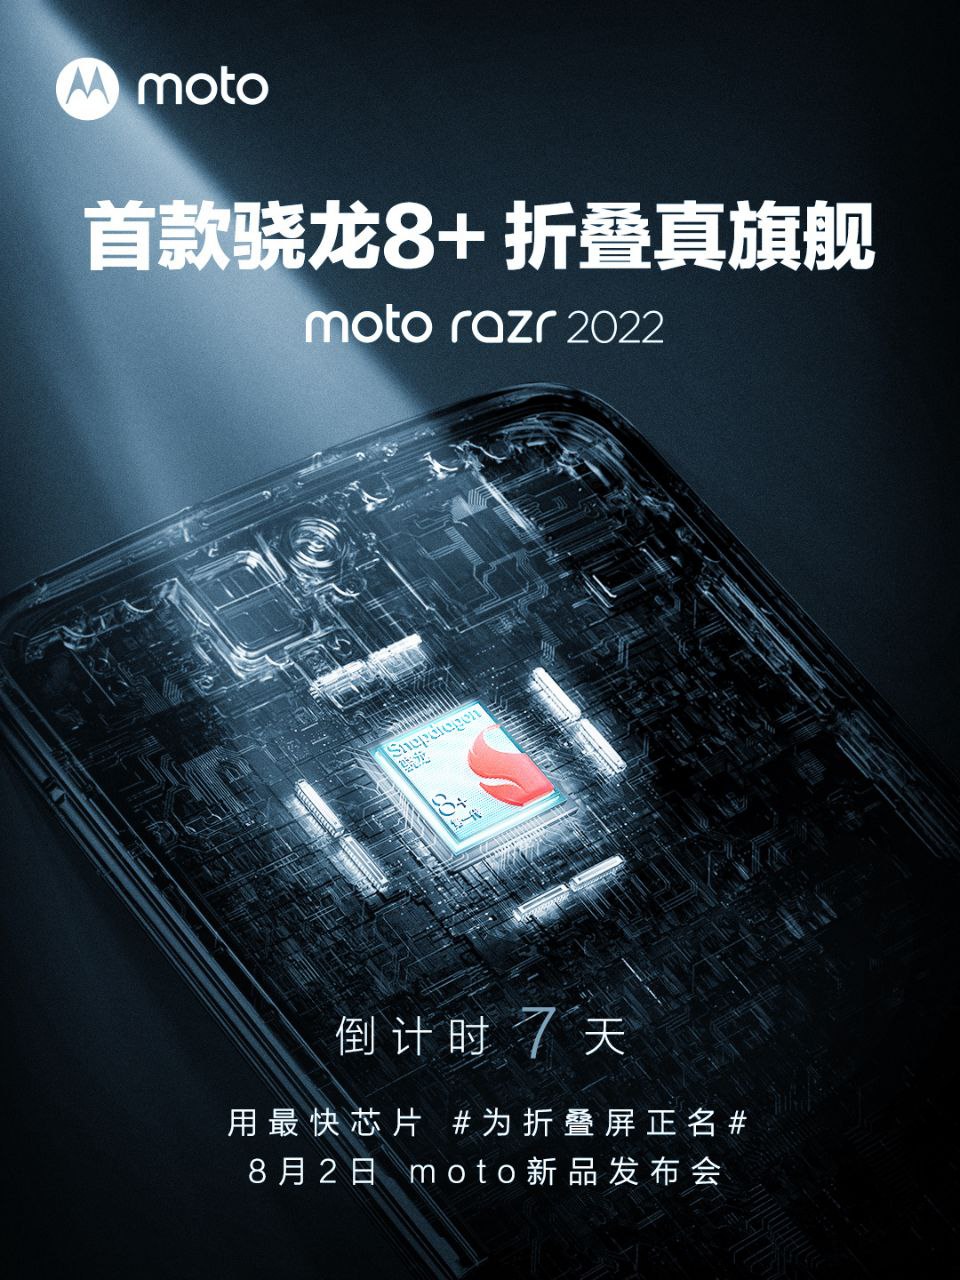 Moto Razr 2022 processor